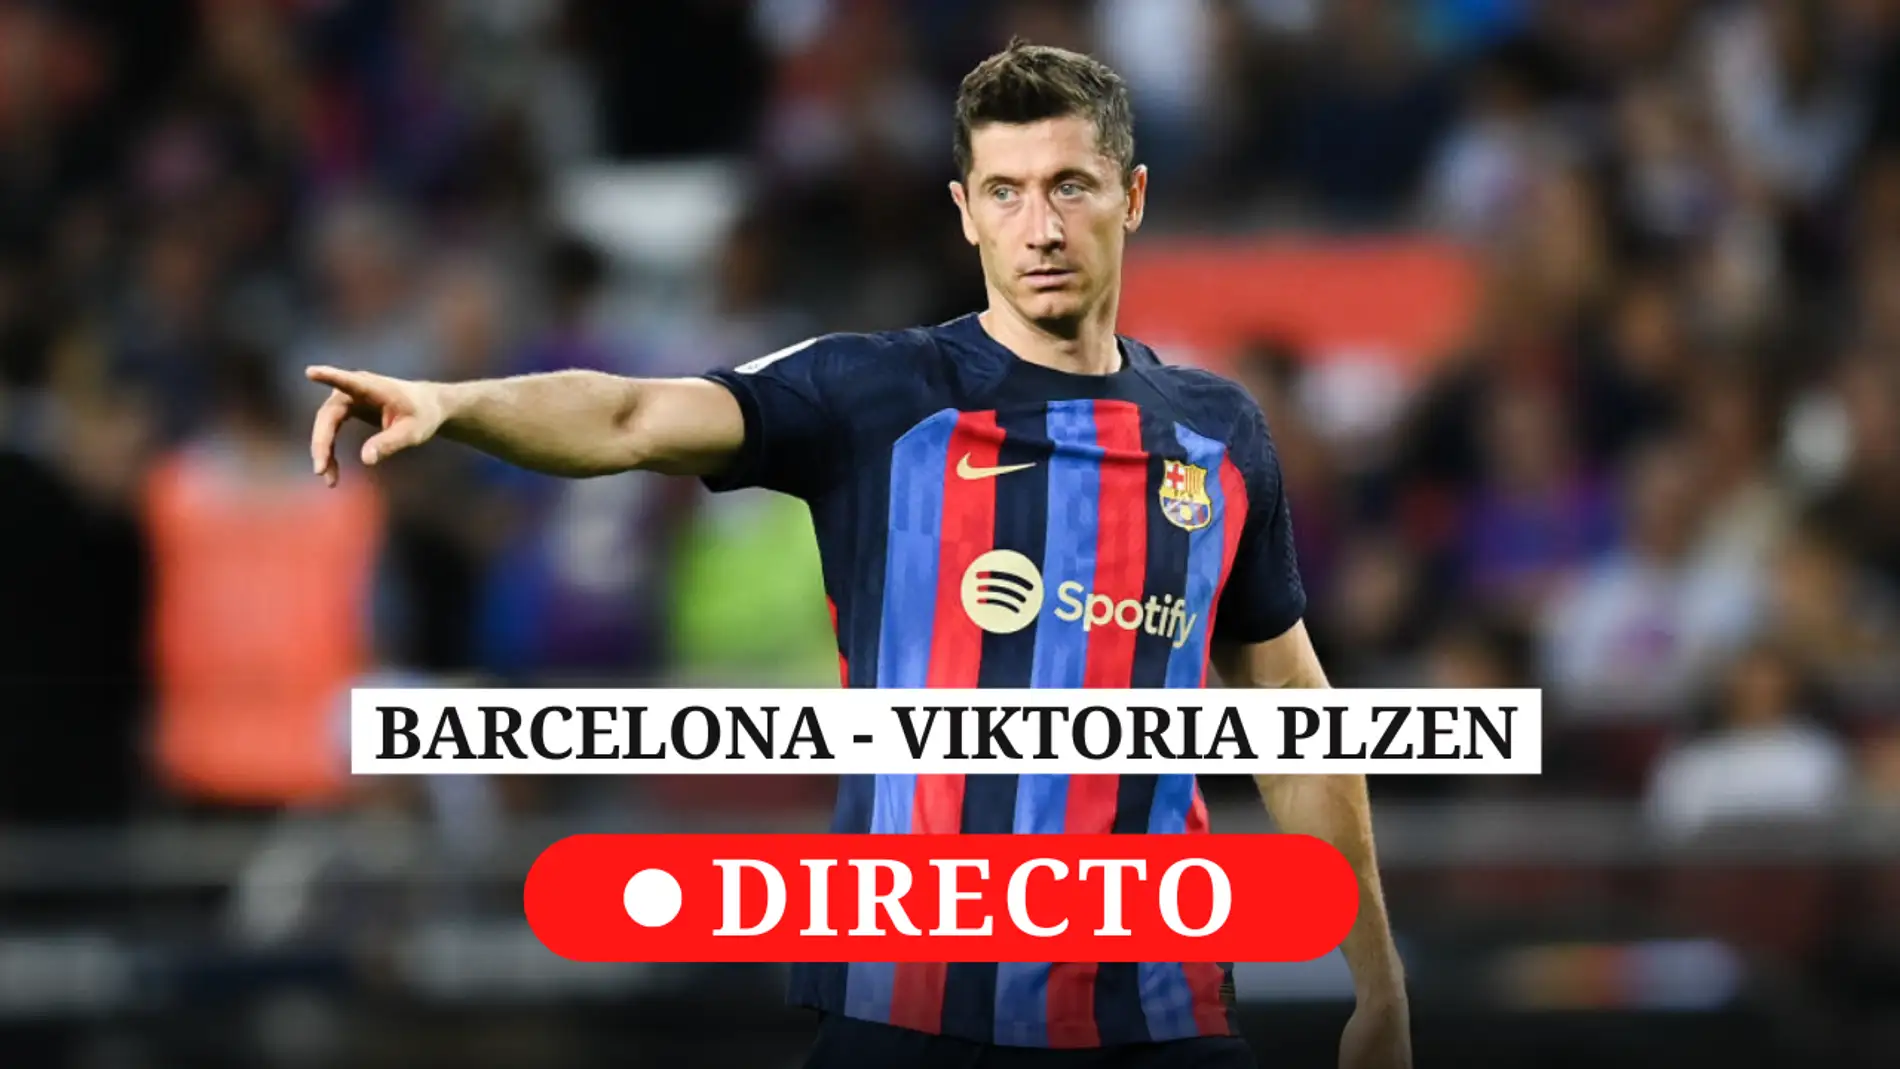 Barcelona - Viktoria Plzen: resultado de hoy, análisis y comentarios partido de Champions League | Onda Cero Radio